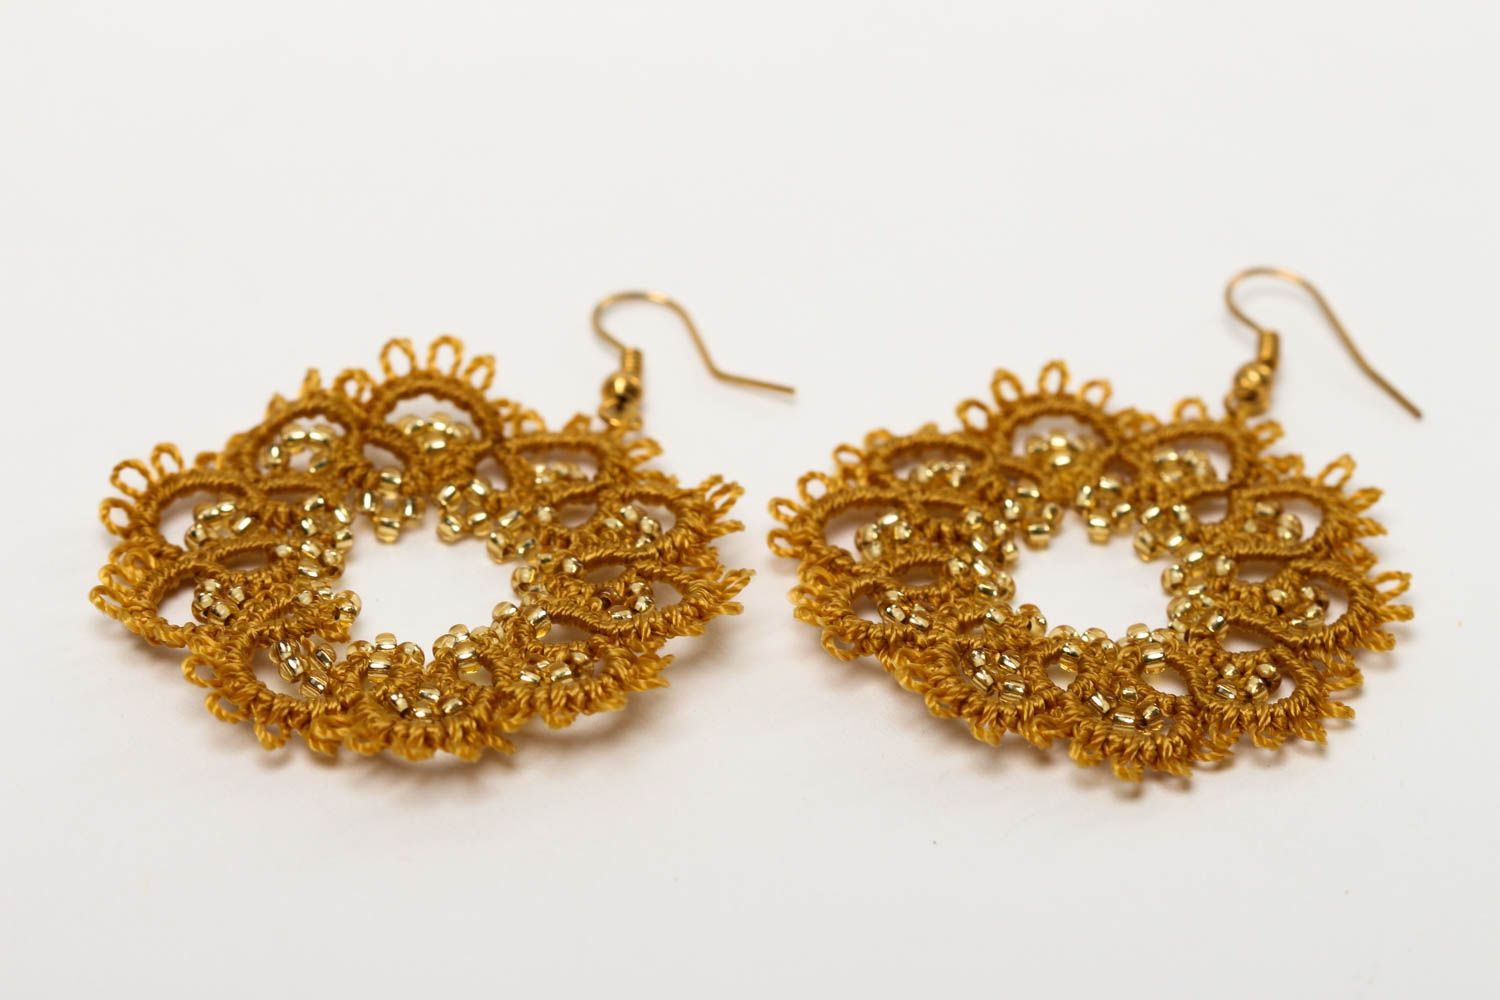 Unusual handmade woven earrings woven lace earrings tatting jewelry designs photo 3